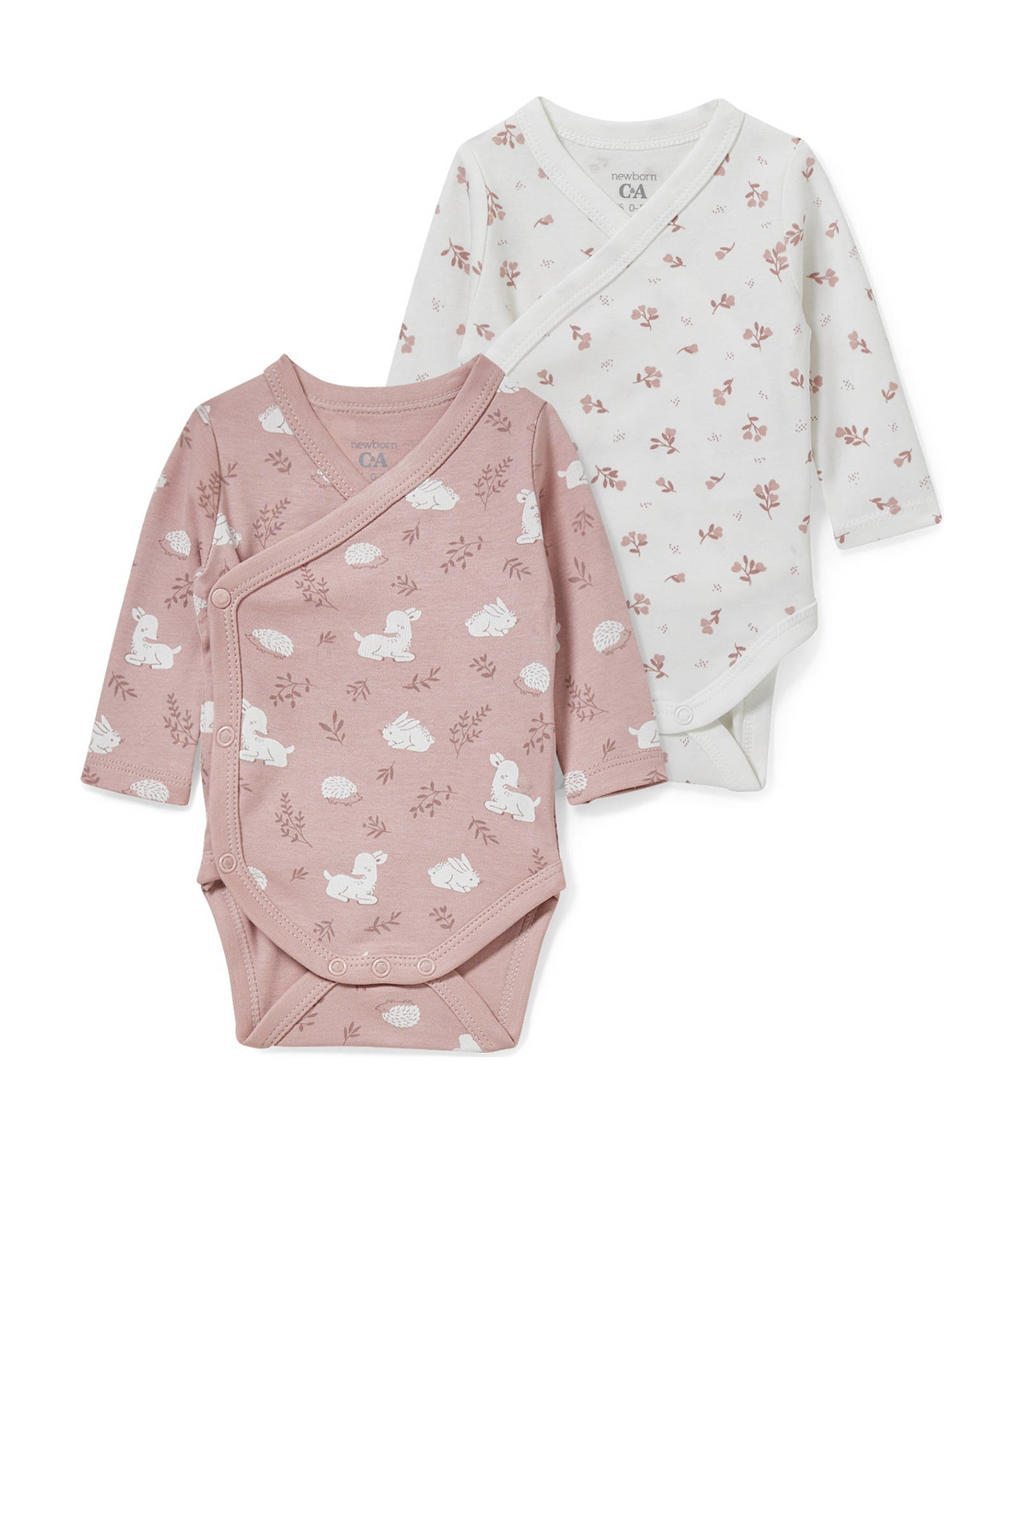 C&A Baby Newborn romper - set van 2 roze/wit